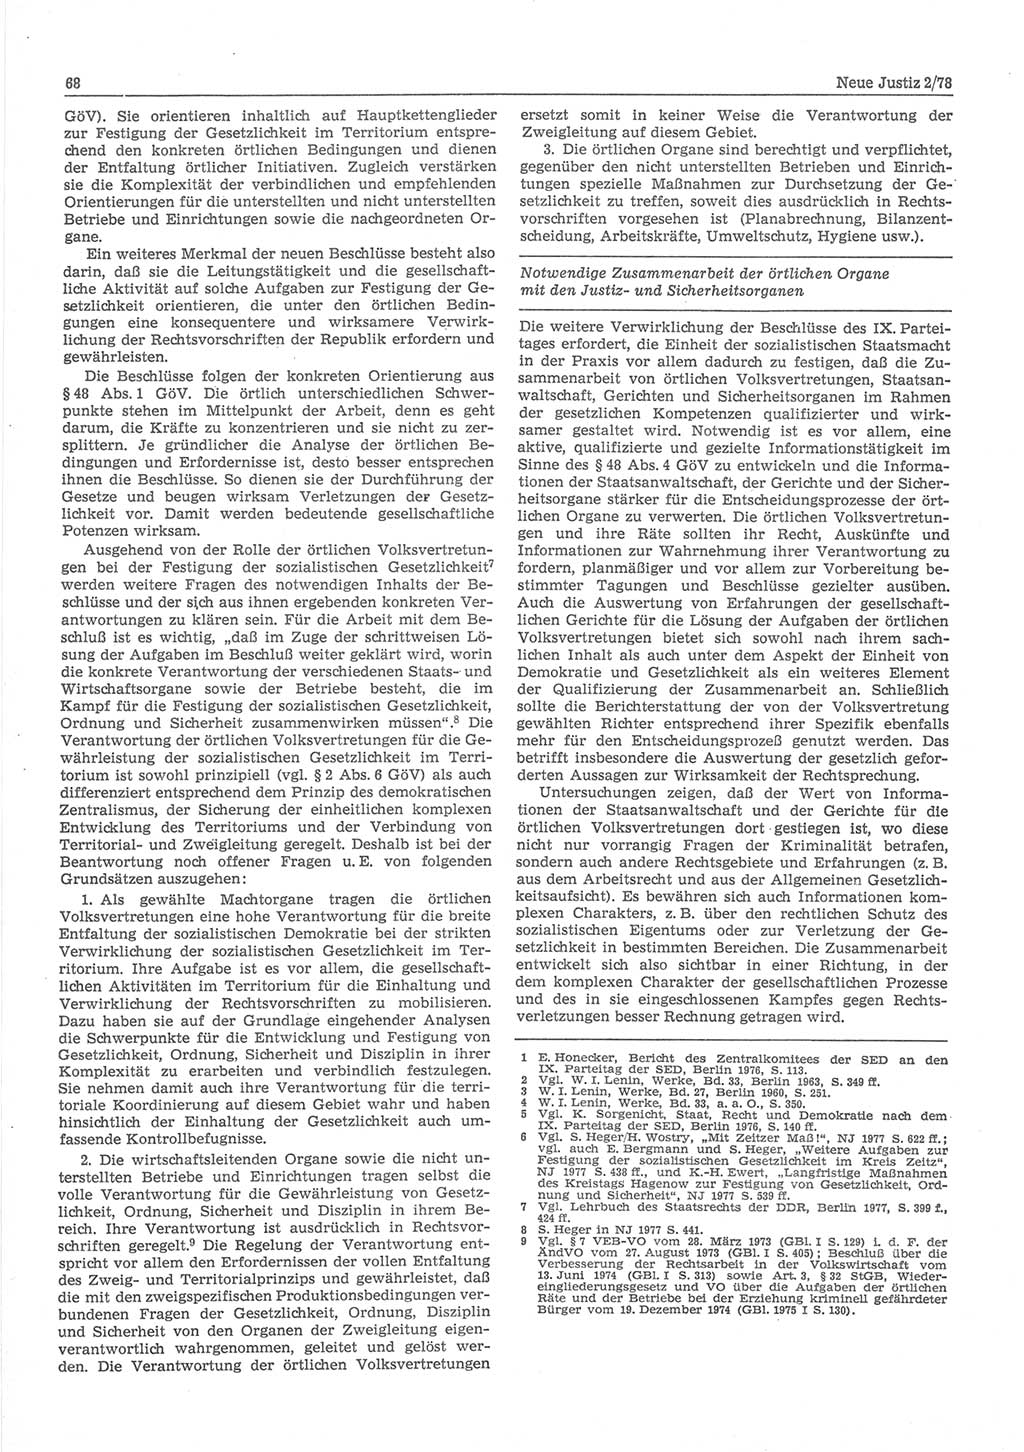 Neue Justiz (NJ), Zeitschrift für sozialistisches Recht und Gesetzlichkeit [Deutsche Demokratische Republik (DDR)], 32. Jahrgang 1978, Seite 68 (NJ DDR 1978, S. 68)